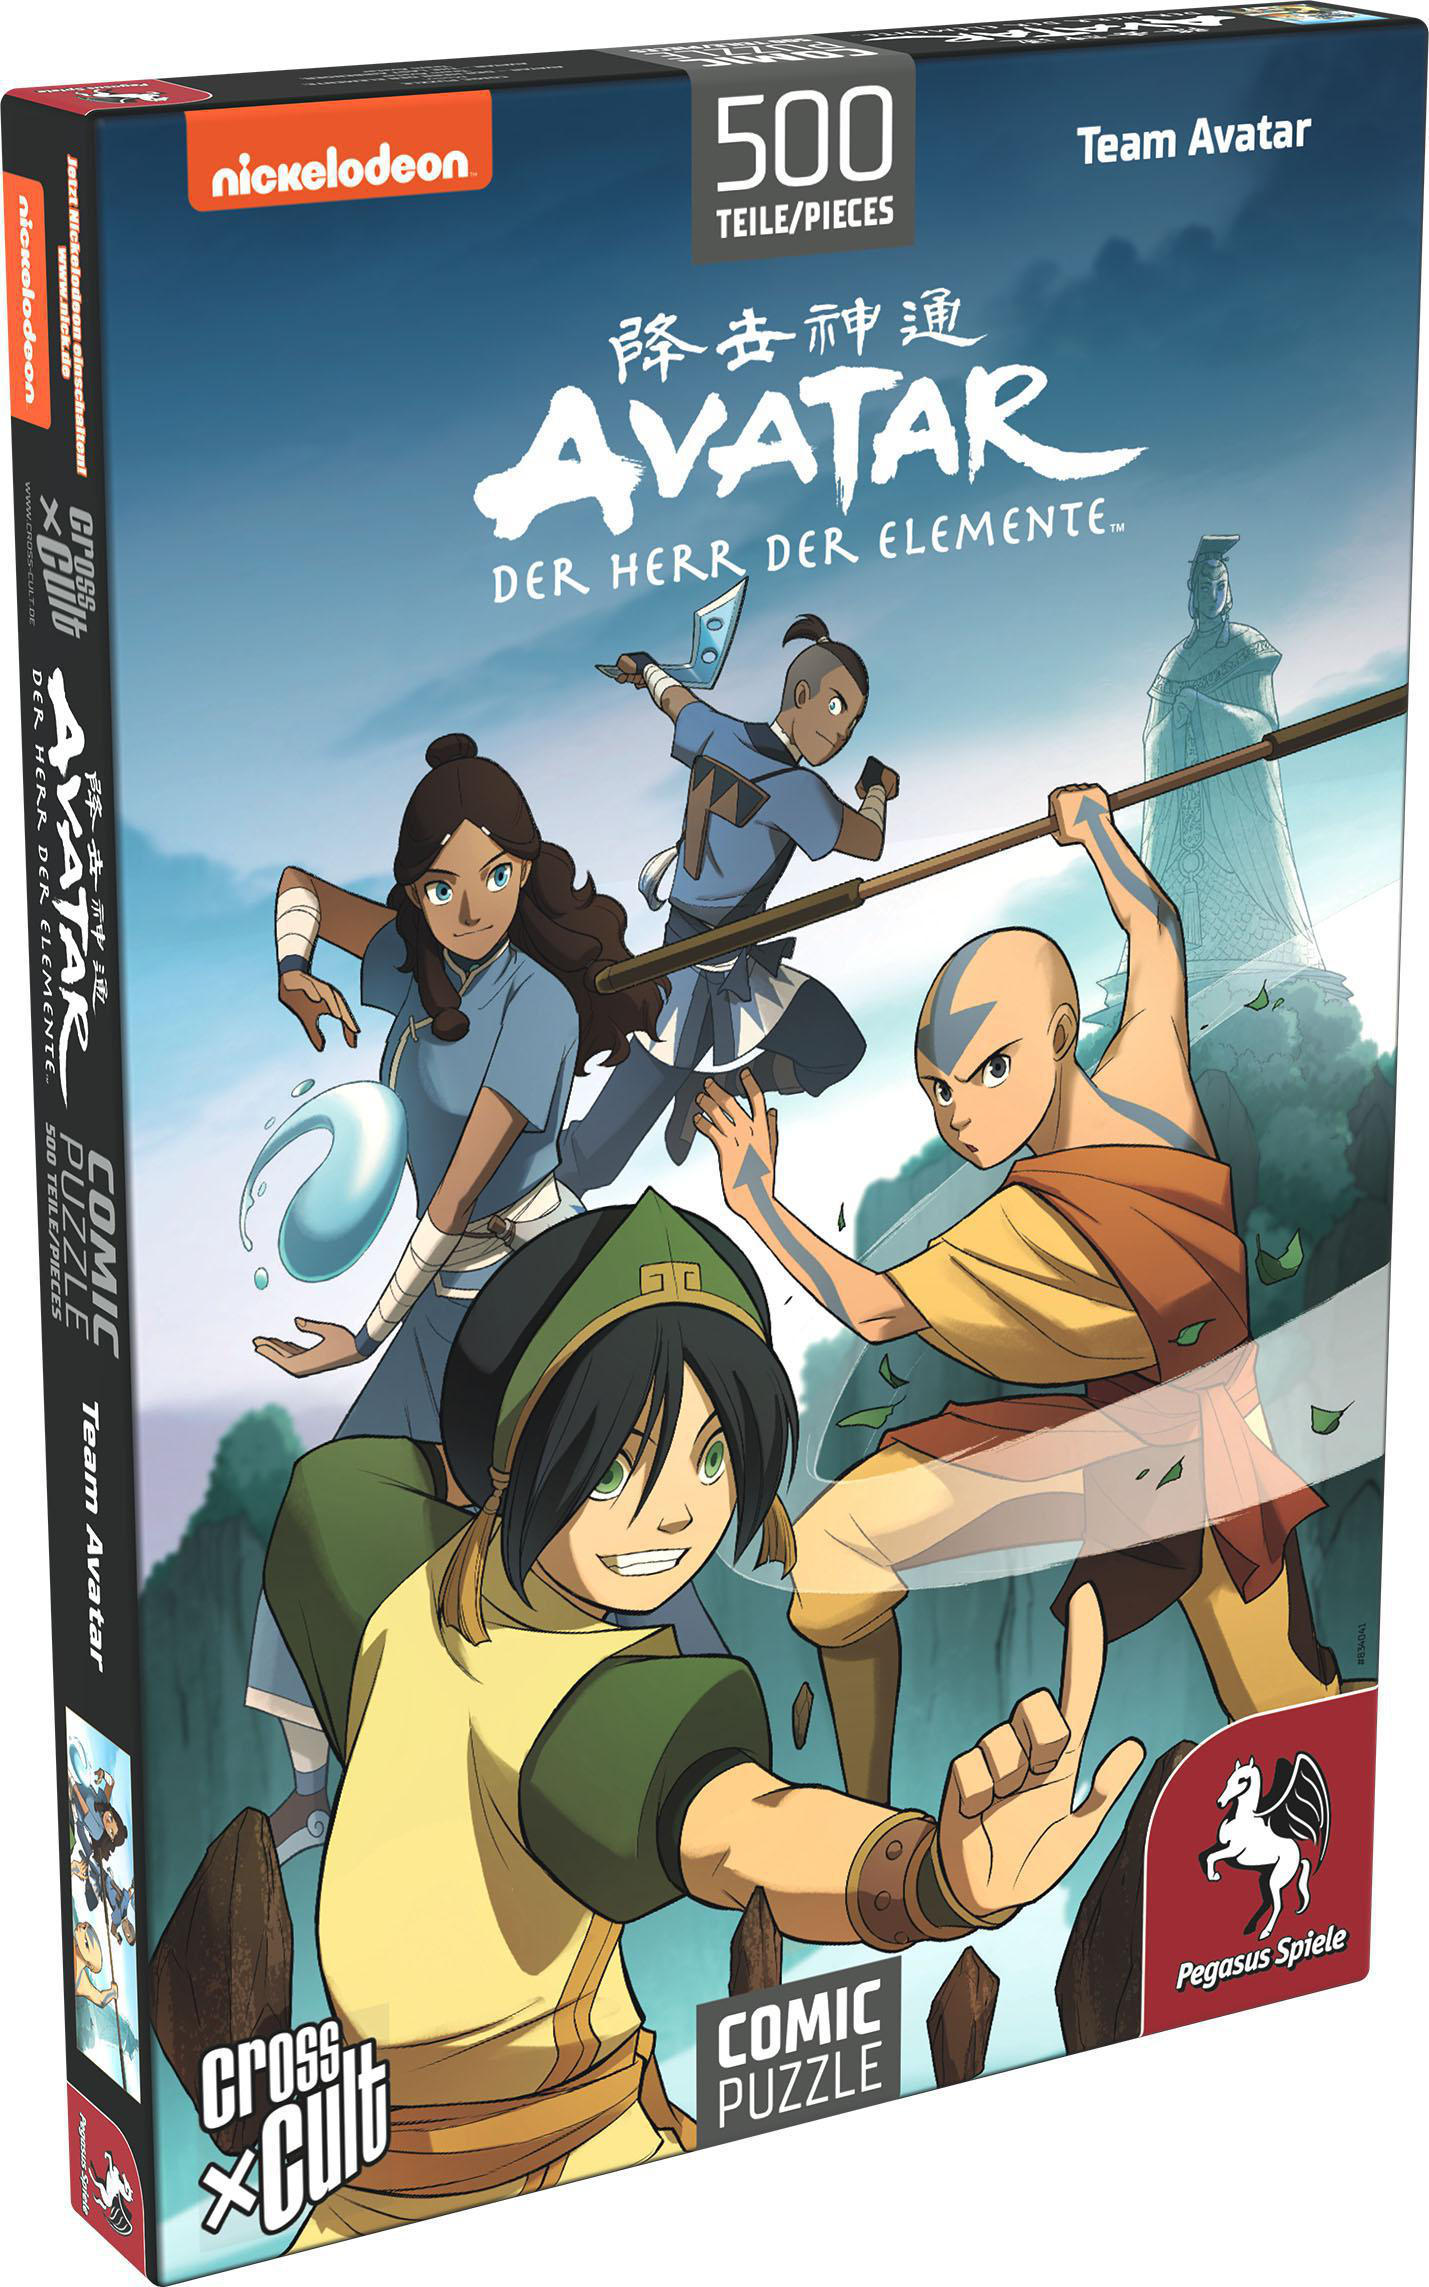 PEGASUS SPIELE Puzzle: – der (Team Avatar), Der Teile Puzzle Elemente Mehrfarbig 500 Herr Avatar